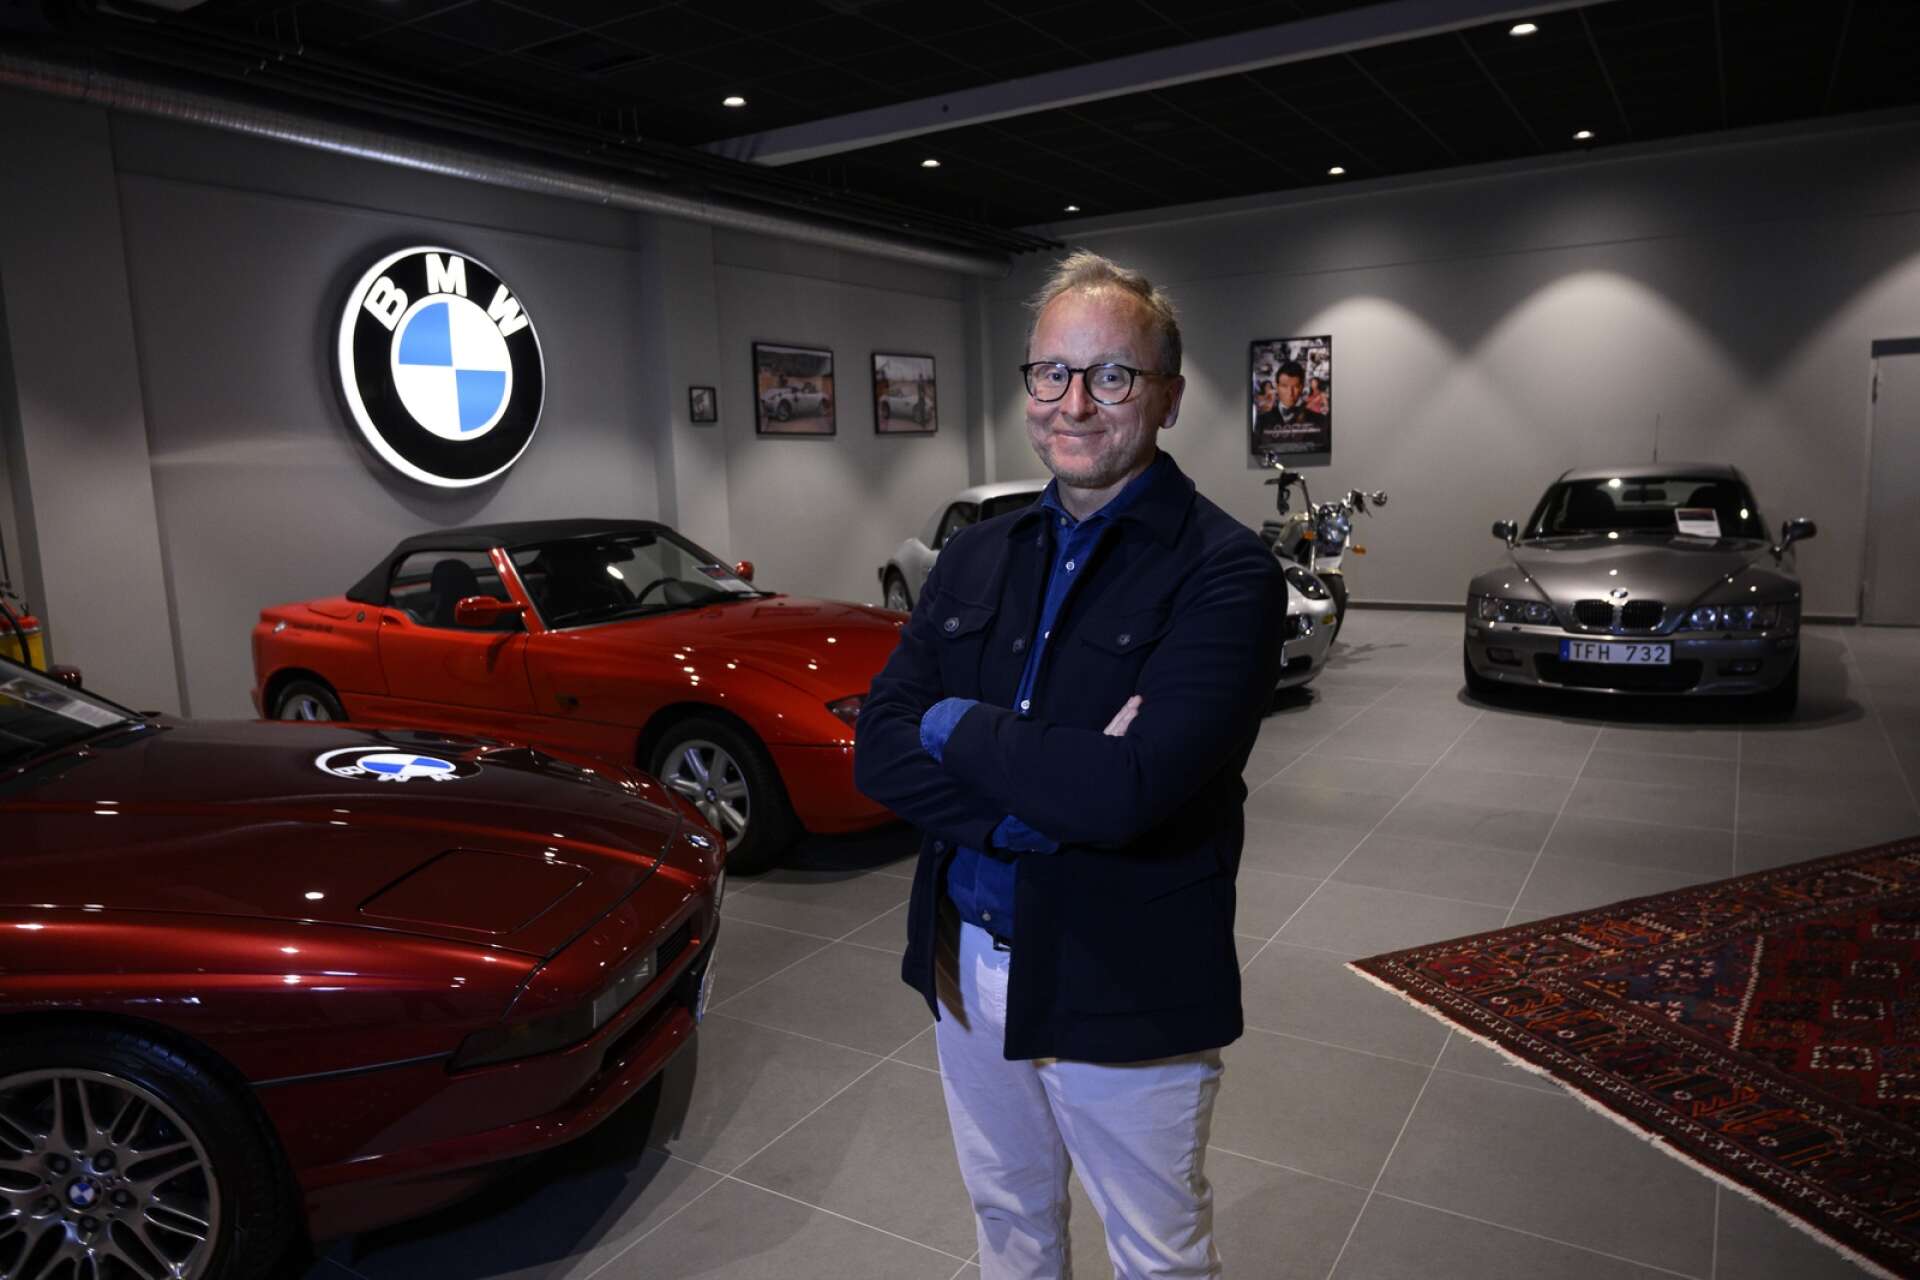 ”Egentligen är det ingen skillnad på däckslitaget mellan elbilar och bensin- och dieselbilar, utan det handlar främst om körsättet. De som kör elbil trampar lite mer på gasen eftersom effekten och kraften är så stor”, säger Magnus Gustafsson vd på Autowåx i Karlstad.